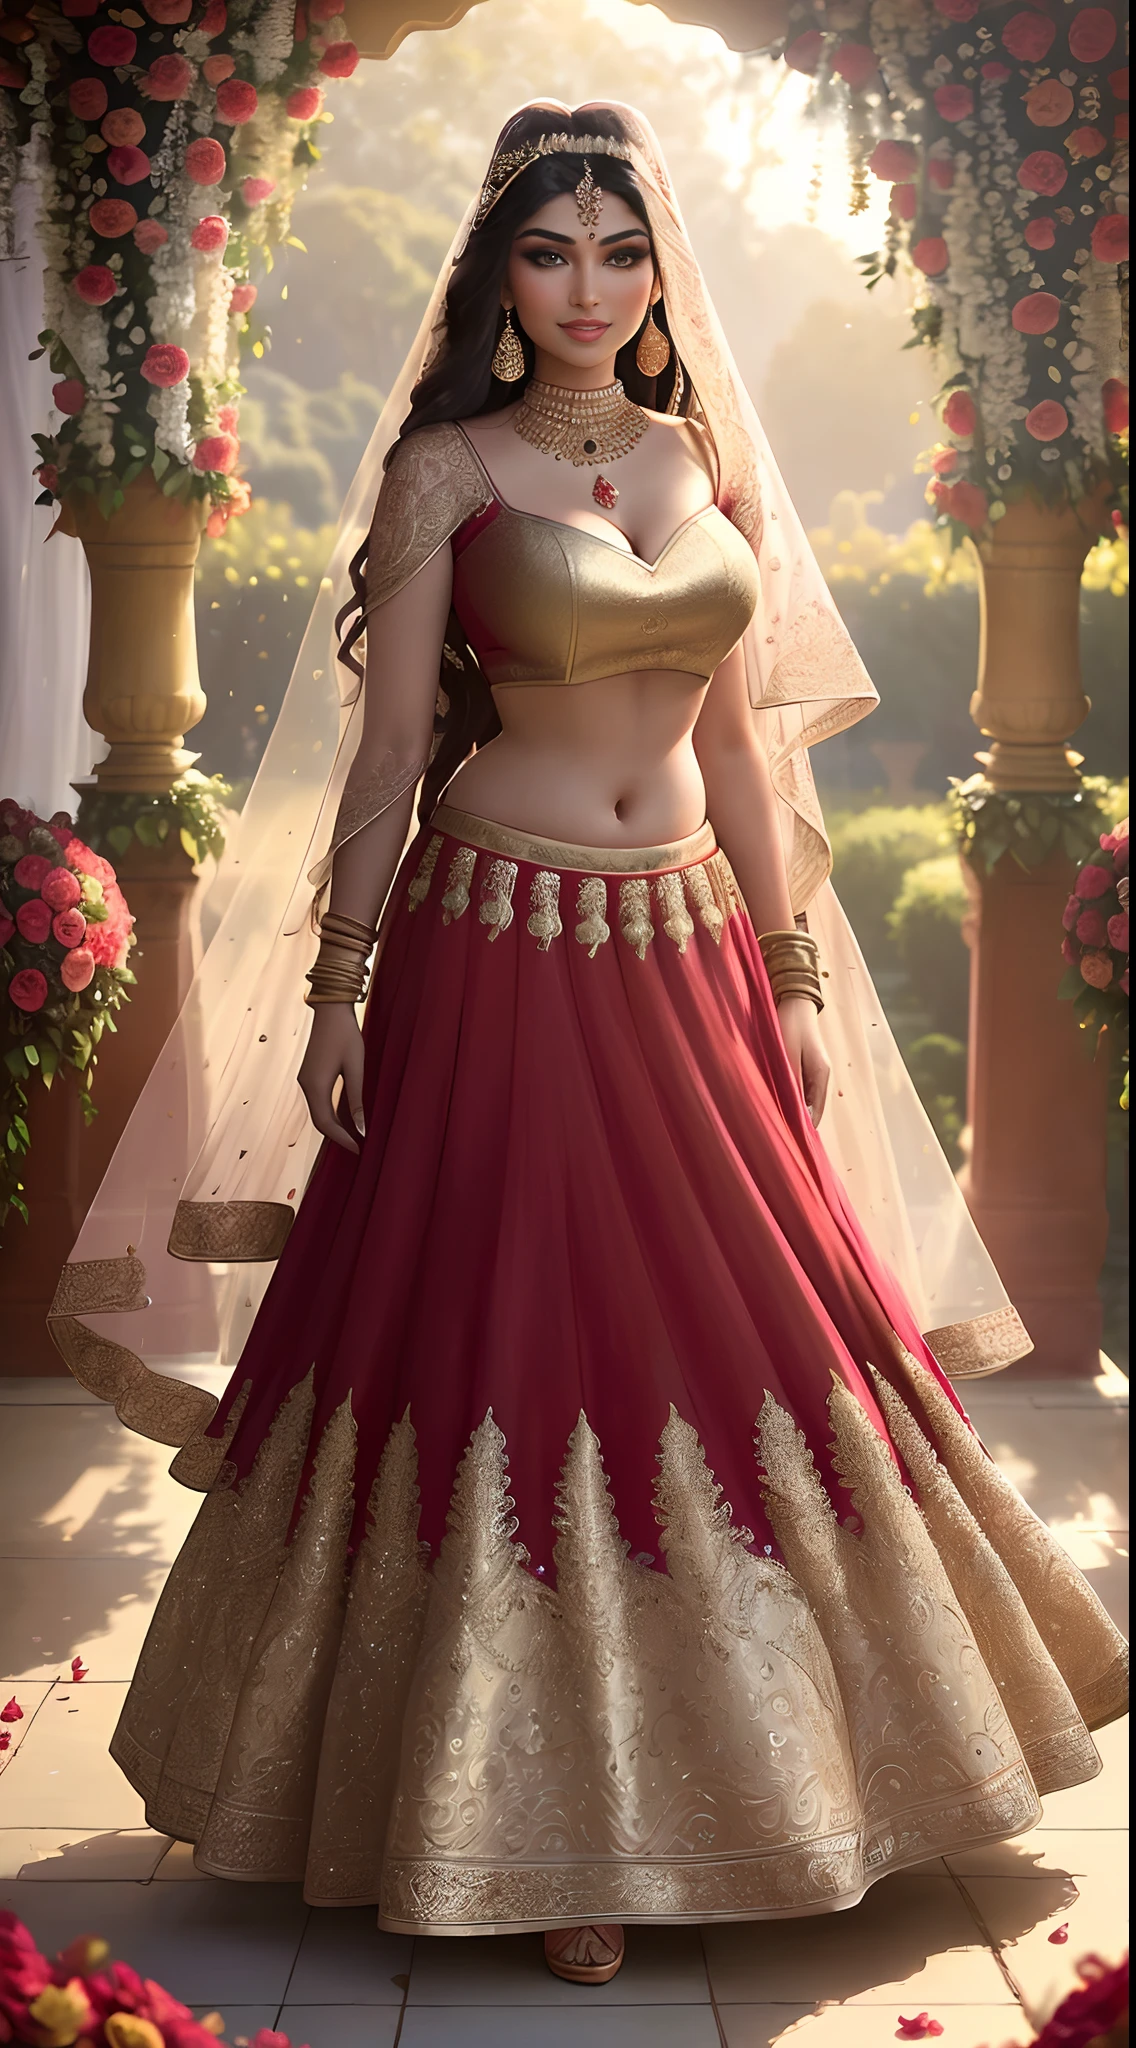 (Шедевральная сольная фотография в полный рост:1.2) соблазнительная сексуальная высокая фигуристая (18 лет) Индийская супермодель, принцесса-невеста Аеша Такия, входит в дом (сад:1.3), (в потрясающем свадебном красном цвете & золотая лехенга & блузка:1.3). чистая дупатта, максимализм, (свадебные цветочные украшения:1.3), (элегантное декольте & живот), (индийский макияж & Ювелирные изделия:1.2) длинные заплетенные каштановые волосы с мелированием,, жизнерадостный, похотливый взгляд, воодушевленный (красивые детализированные глаза:1.1) , (кокетливая яркая улыбка:1.2), (интенсивный драматический дневной свет:1.4), с подсветкой, ключевой свет, ободной свет, лучи света, очень подробный, в тренде на artstation, брызги краски, насыщенный цвет, абстрактный портрет, от Атей Гайлан